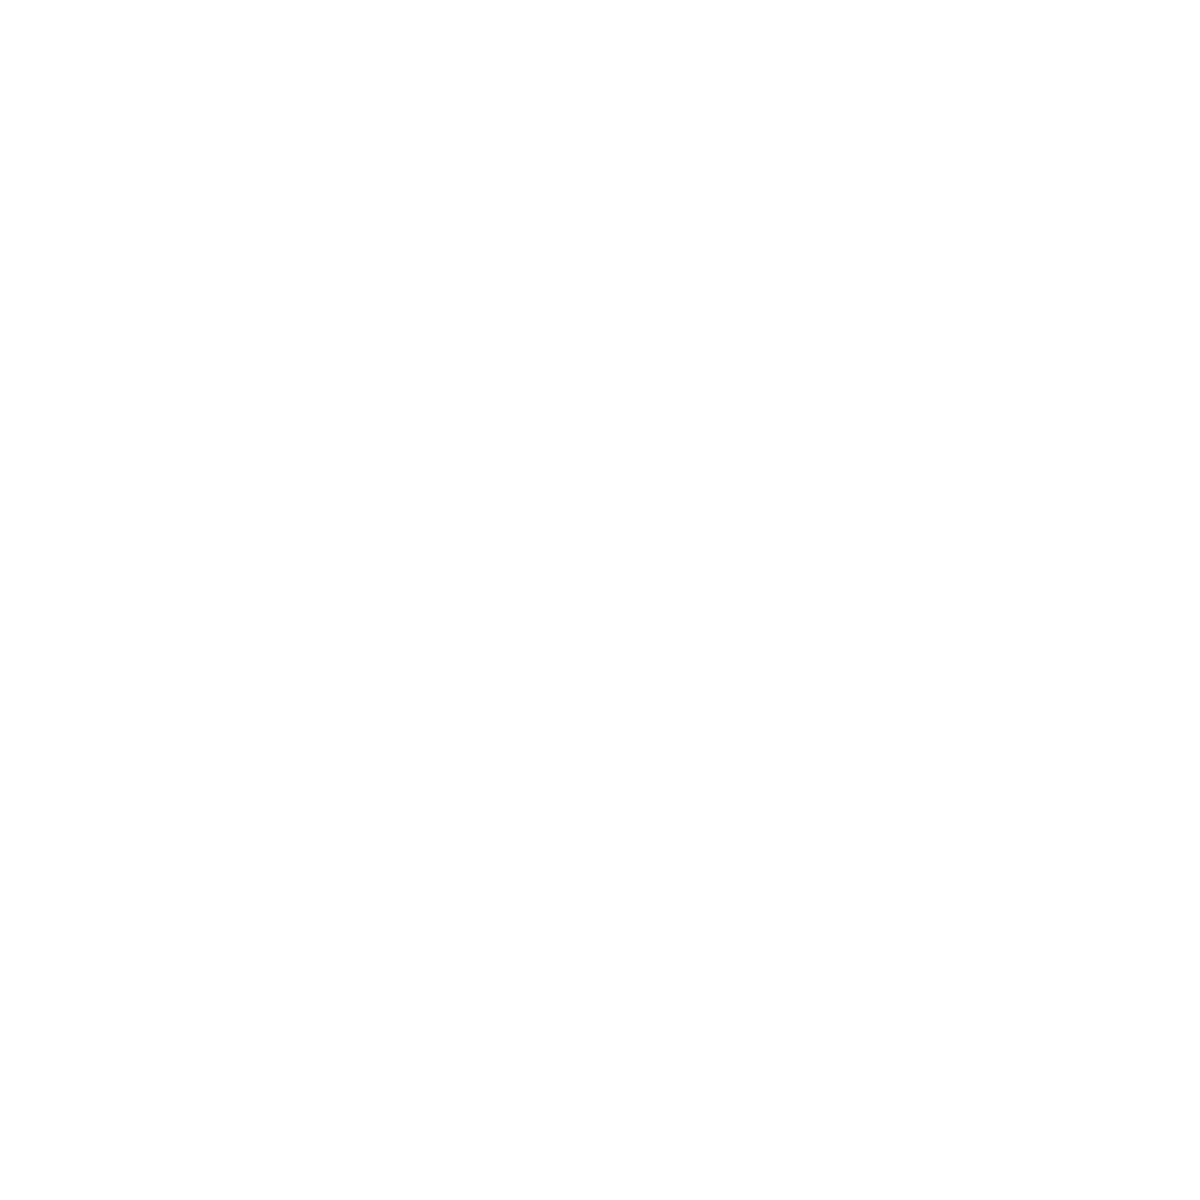 iomart